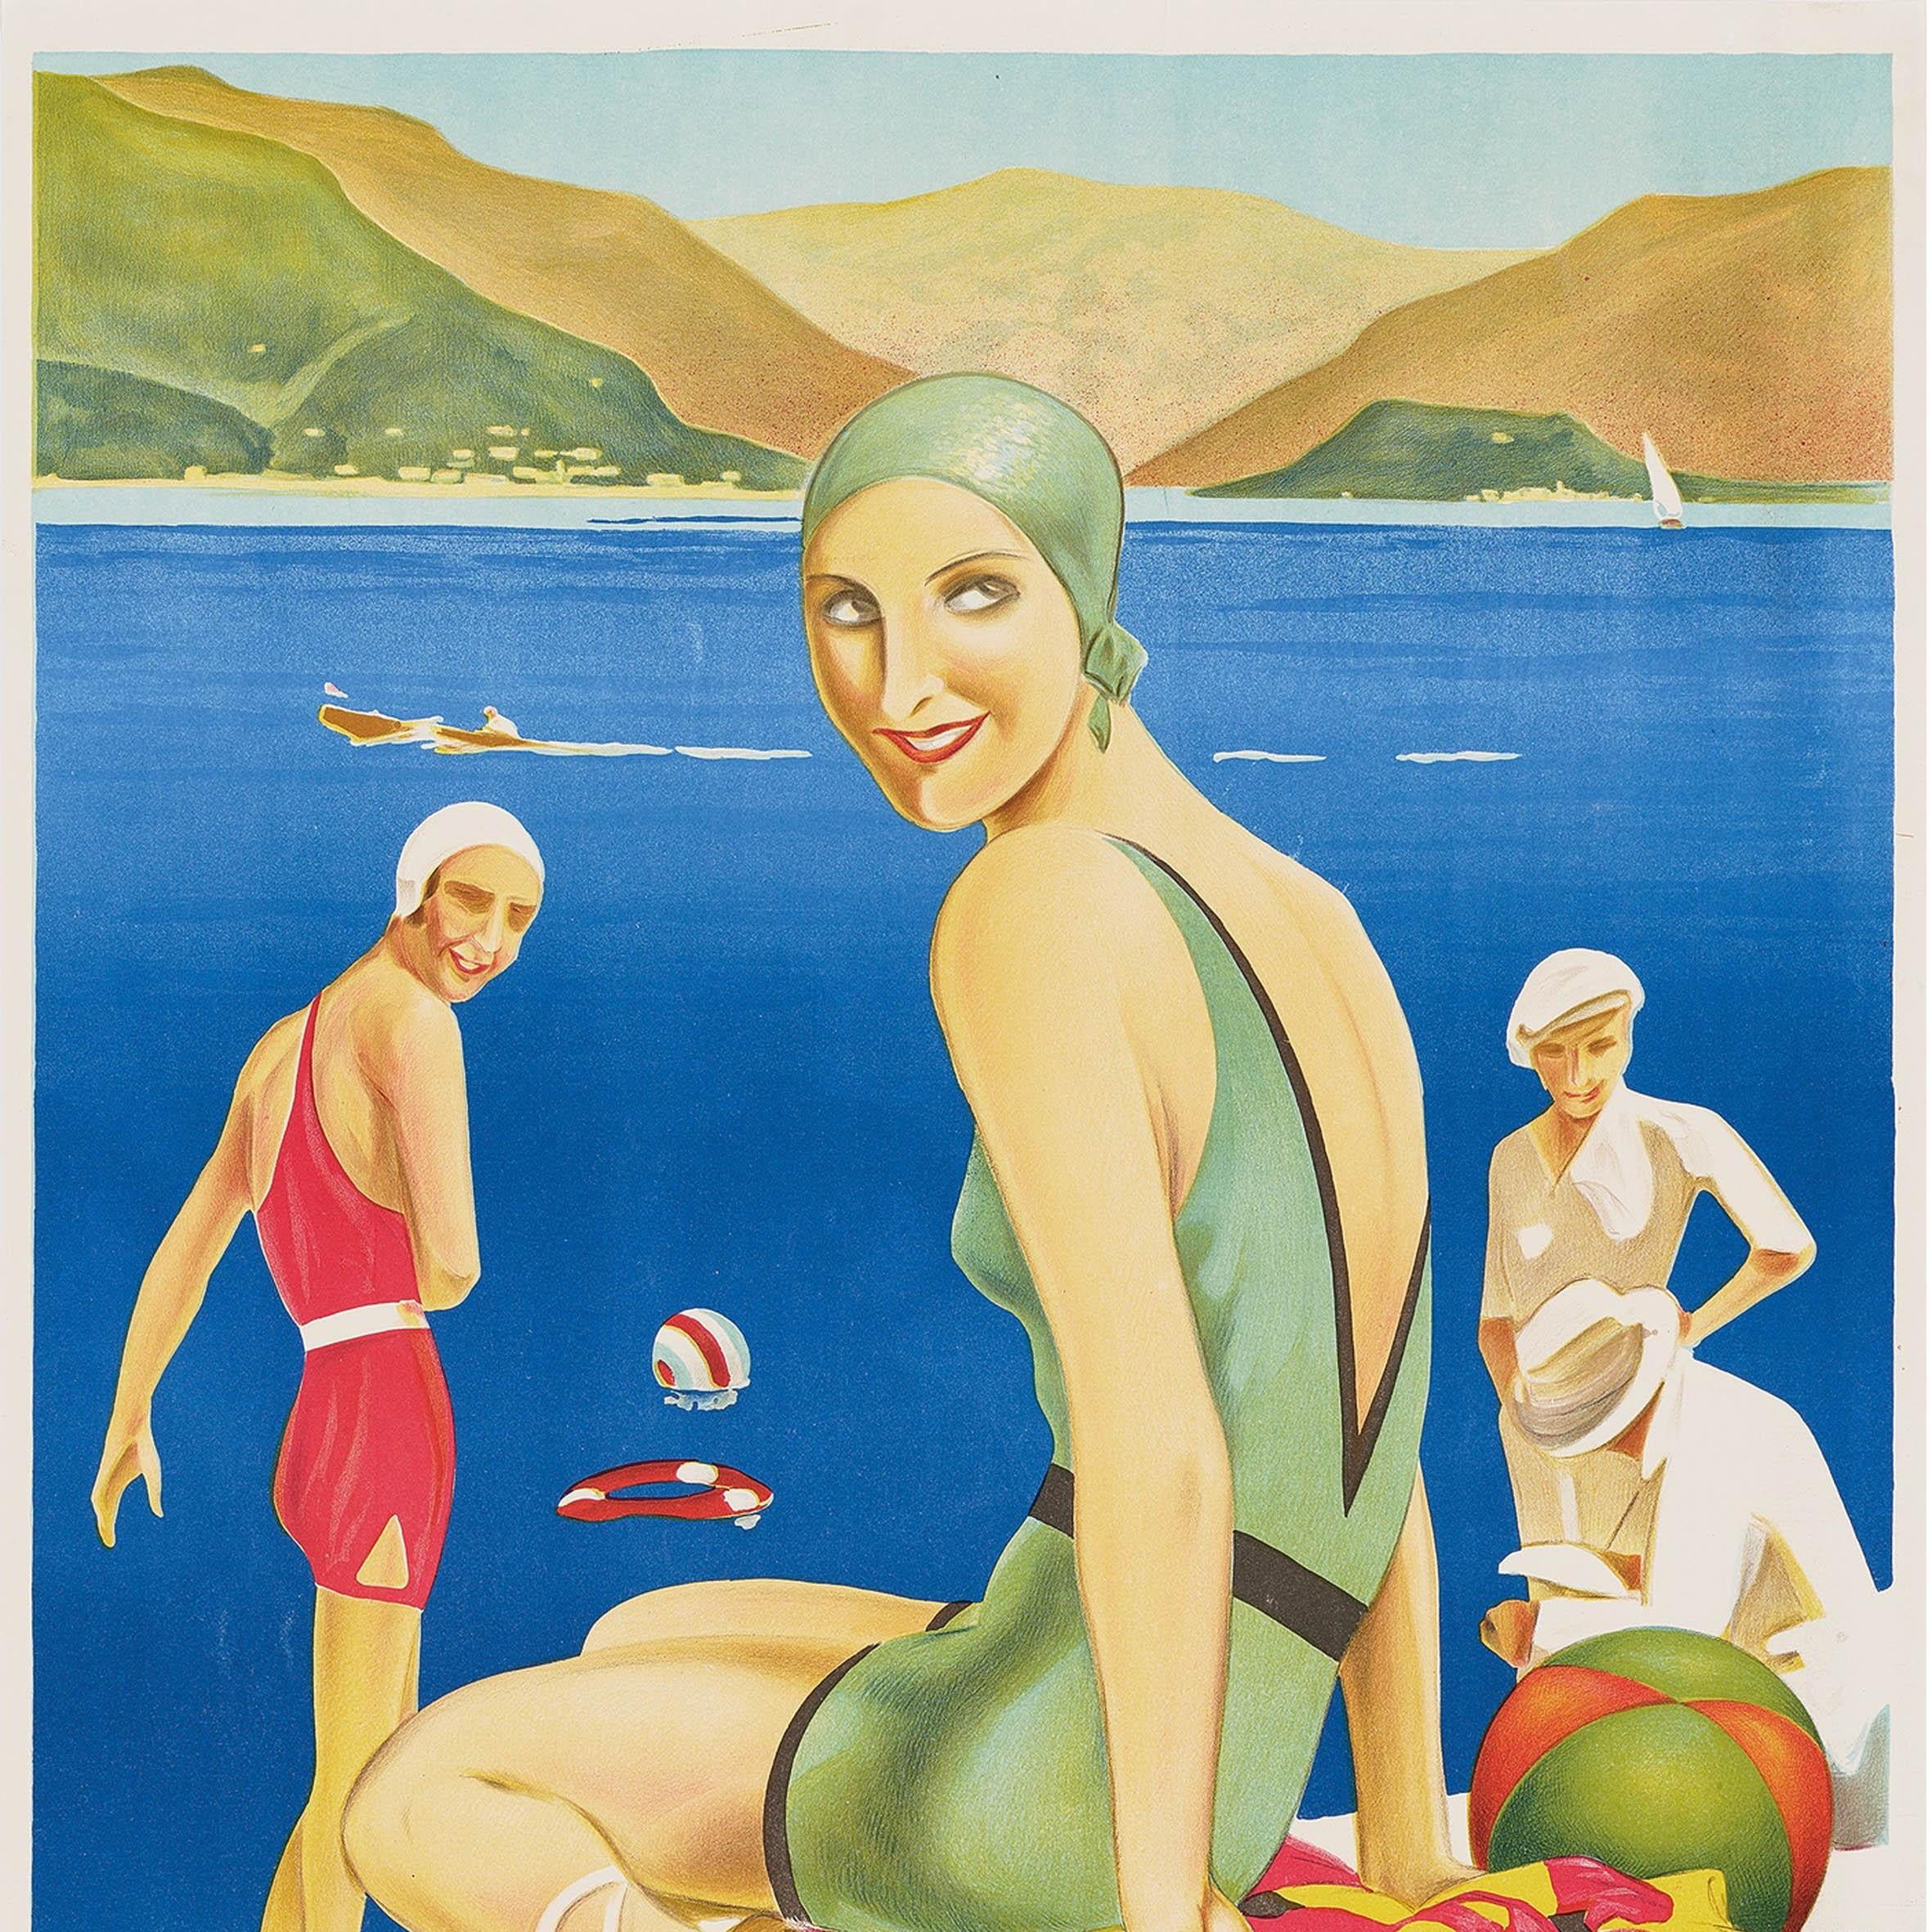 Original Vintage-Reiseplakat für den Comer See Italien mit einer atemberaubenden Art-Deco-Szene mit Menschen in modischer Sommerkleidung und eleganten Badeanzügen im Vordergrund, einer Dame, die auf einem bunten Handtuch neben einem Strandball